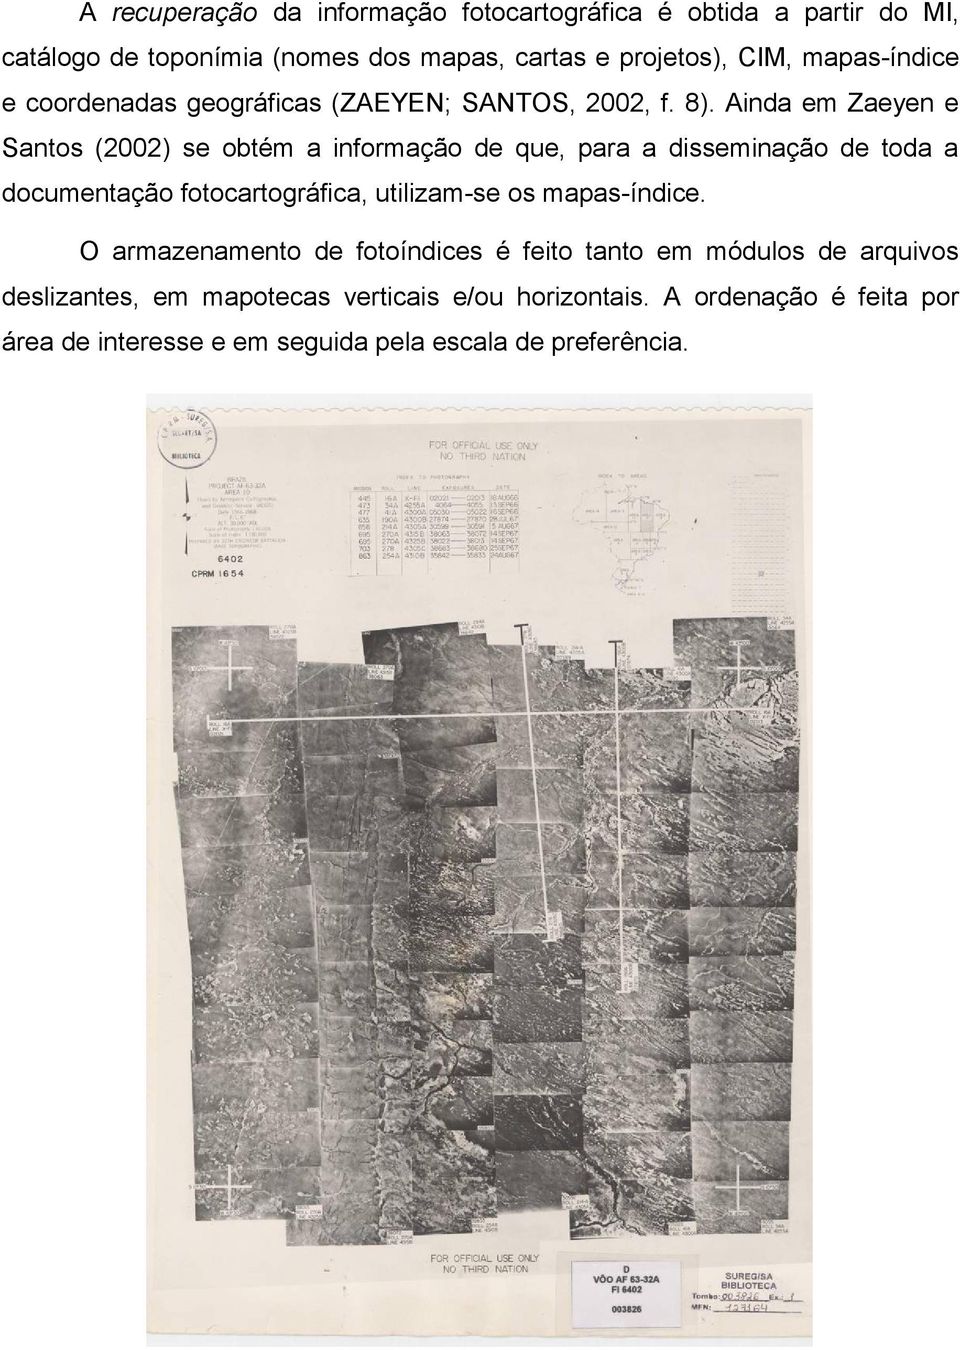 Ainda em Zaeyen e Santos (2002) se obtém a informação de que, para a disseminação de toda a documentação fotocartográfica, utilizam-se os